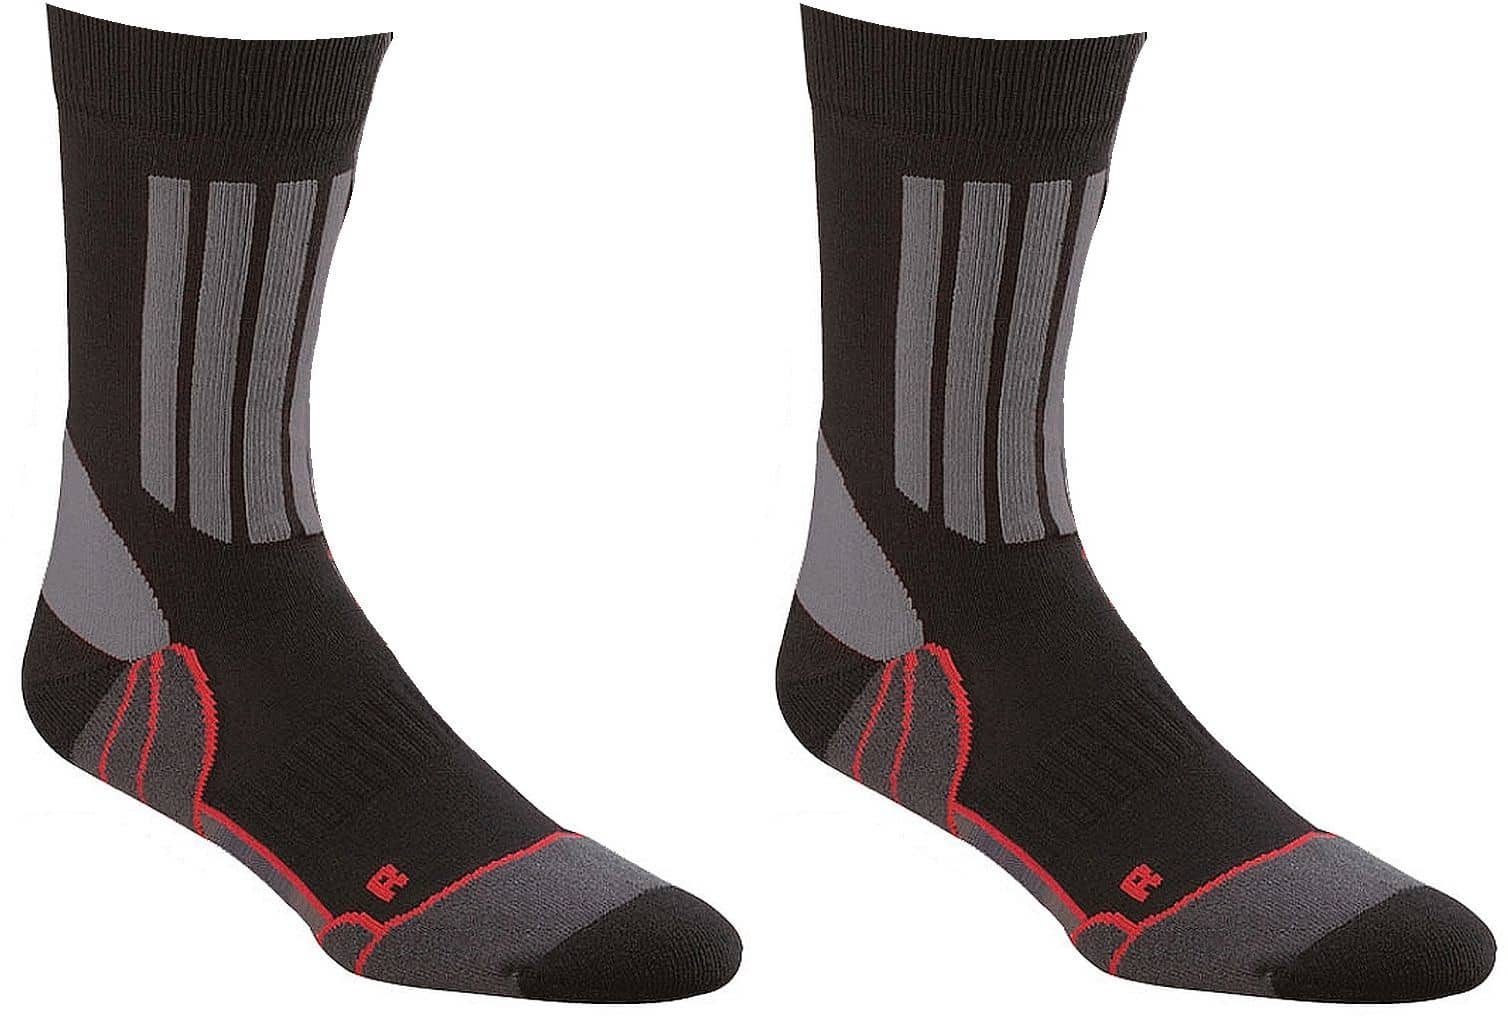 HERREN Allrounder Sport-Trekking-Socken mit Silberfaser-Optimale Passform 1 oder 2 Paar